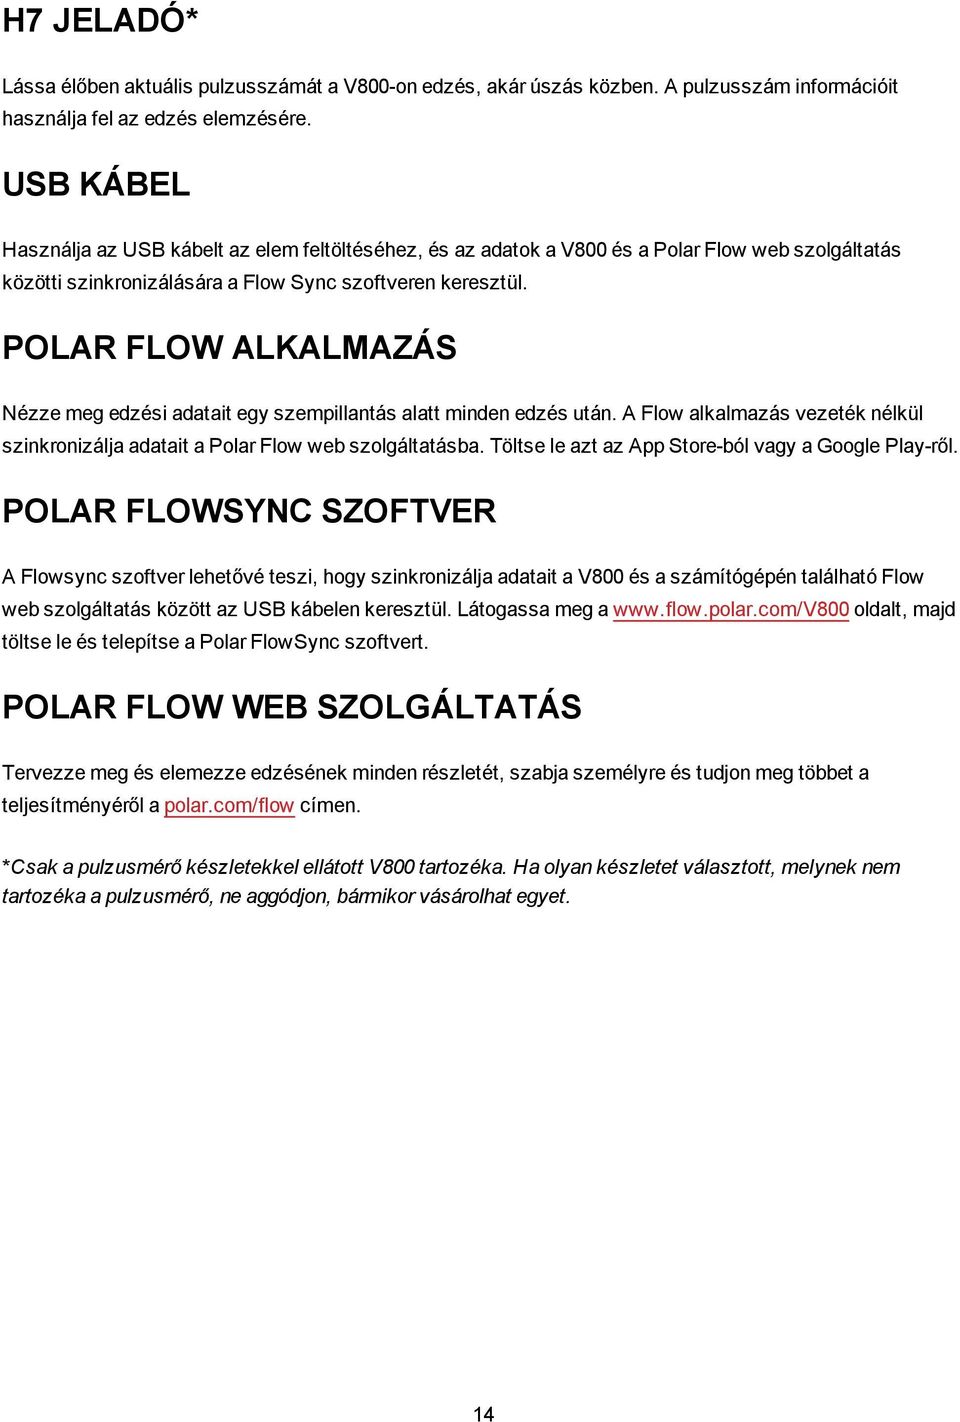 POLAR FLOW ALKALMAZÁS Nézze meg edzési adatait egy szempillantás alatt minden edzés után. A Flow alkalmazás vezeték nélkül szinkronizálja adatait a Polar Flow web szolgáltatásba.